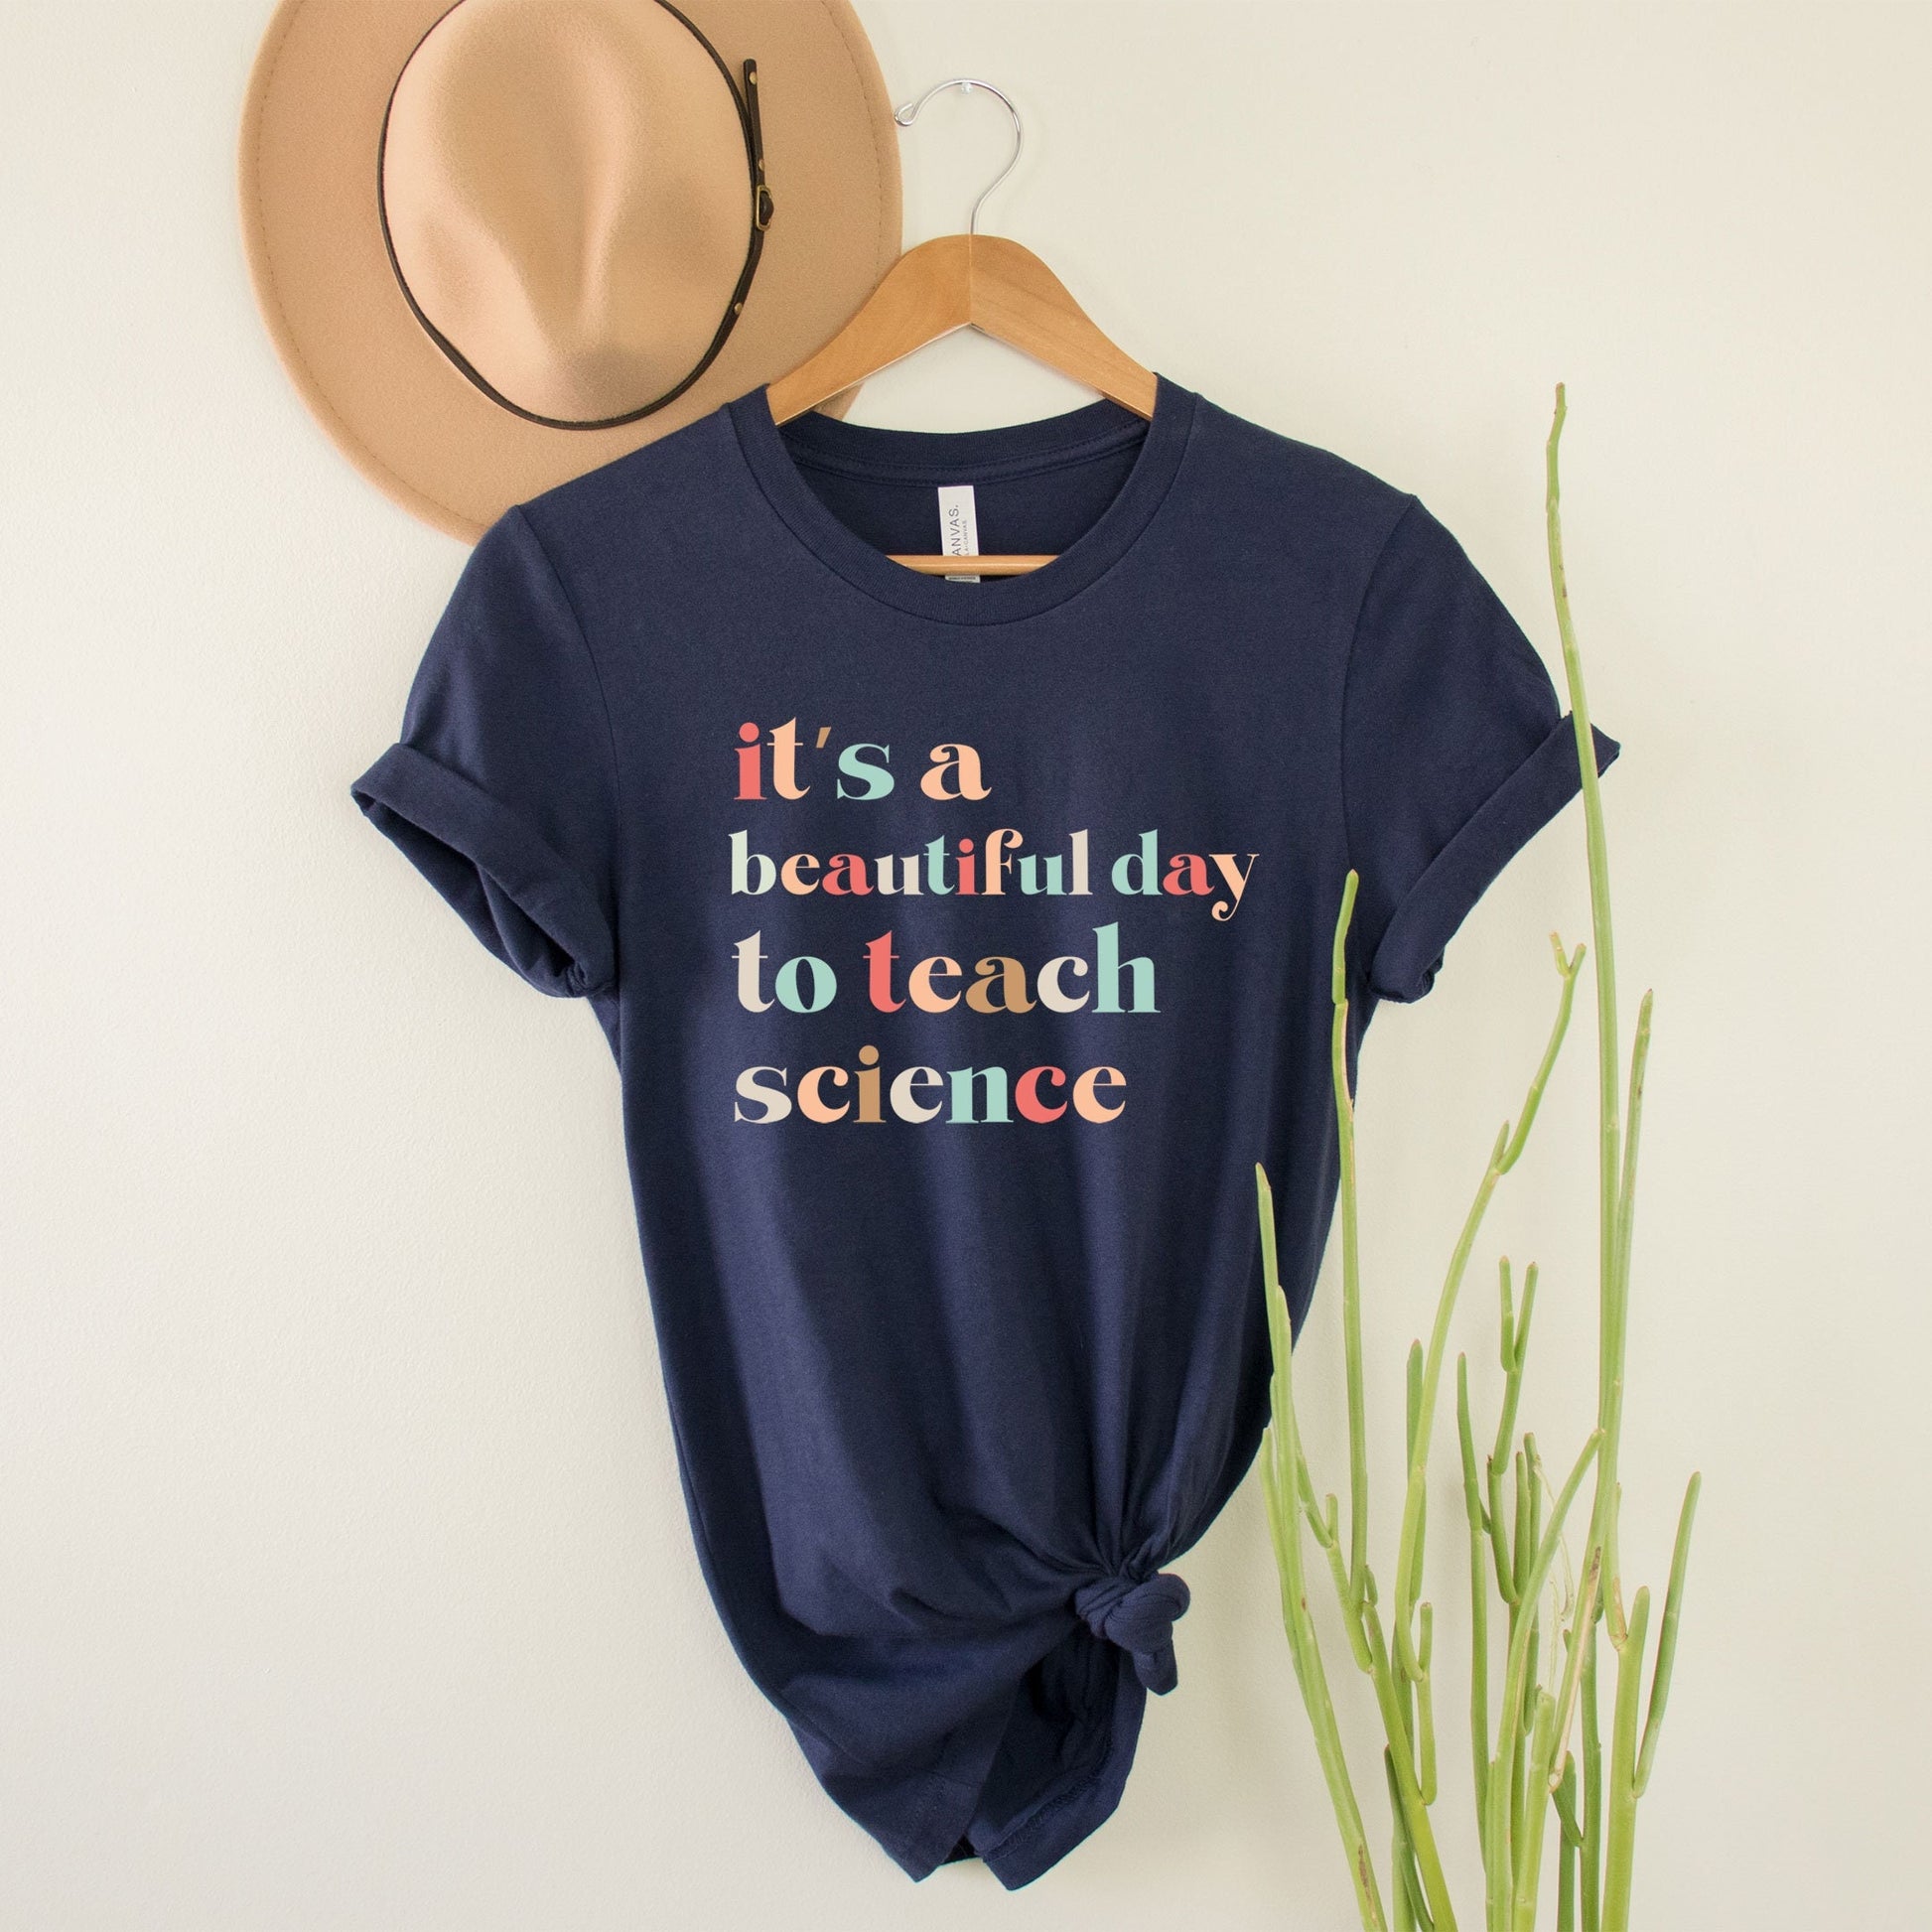 It's A Beautiful Day To Teach Science Shirt, Math Teachers Shirts Middle High School Teacher Gifts 5th Grade 10th Grade Speech Math Stem Tee